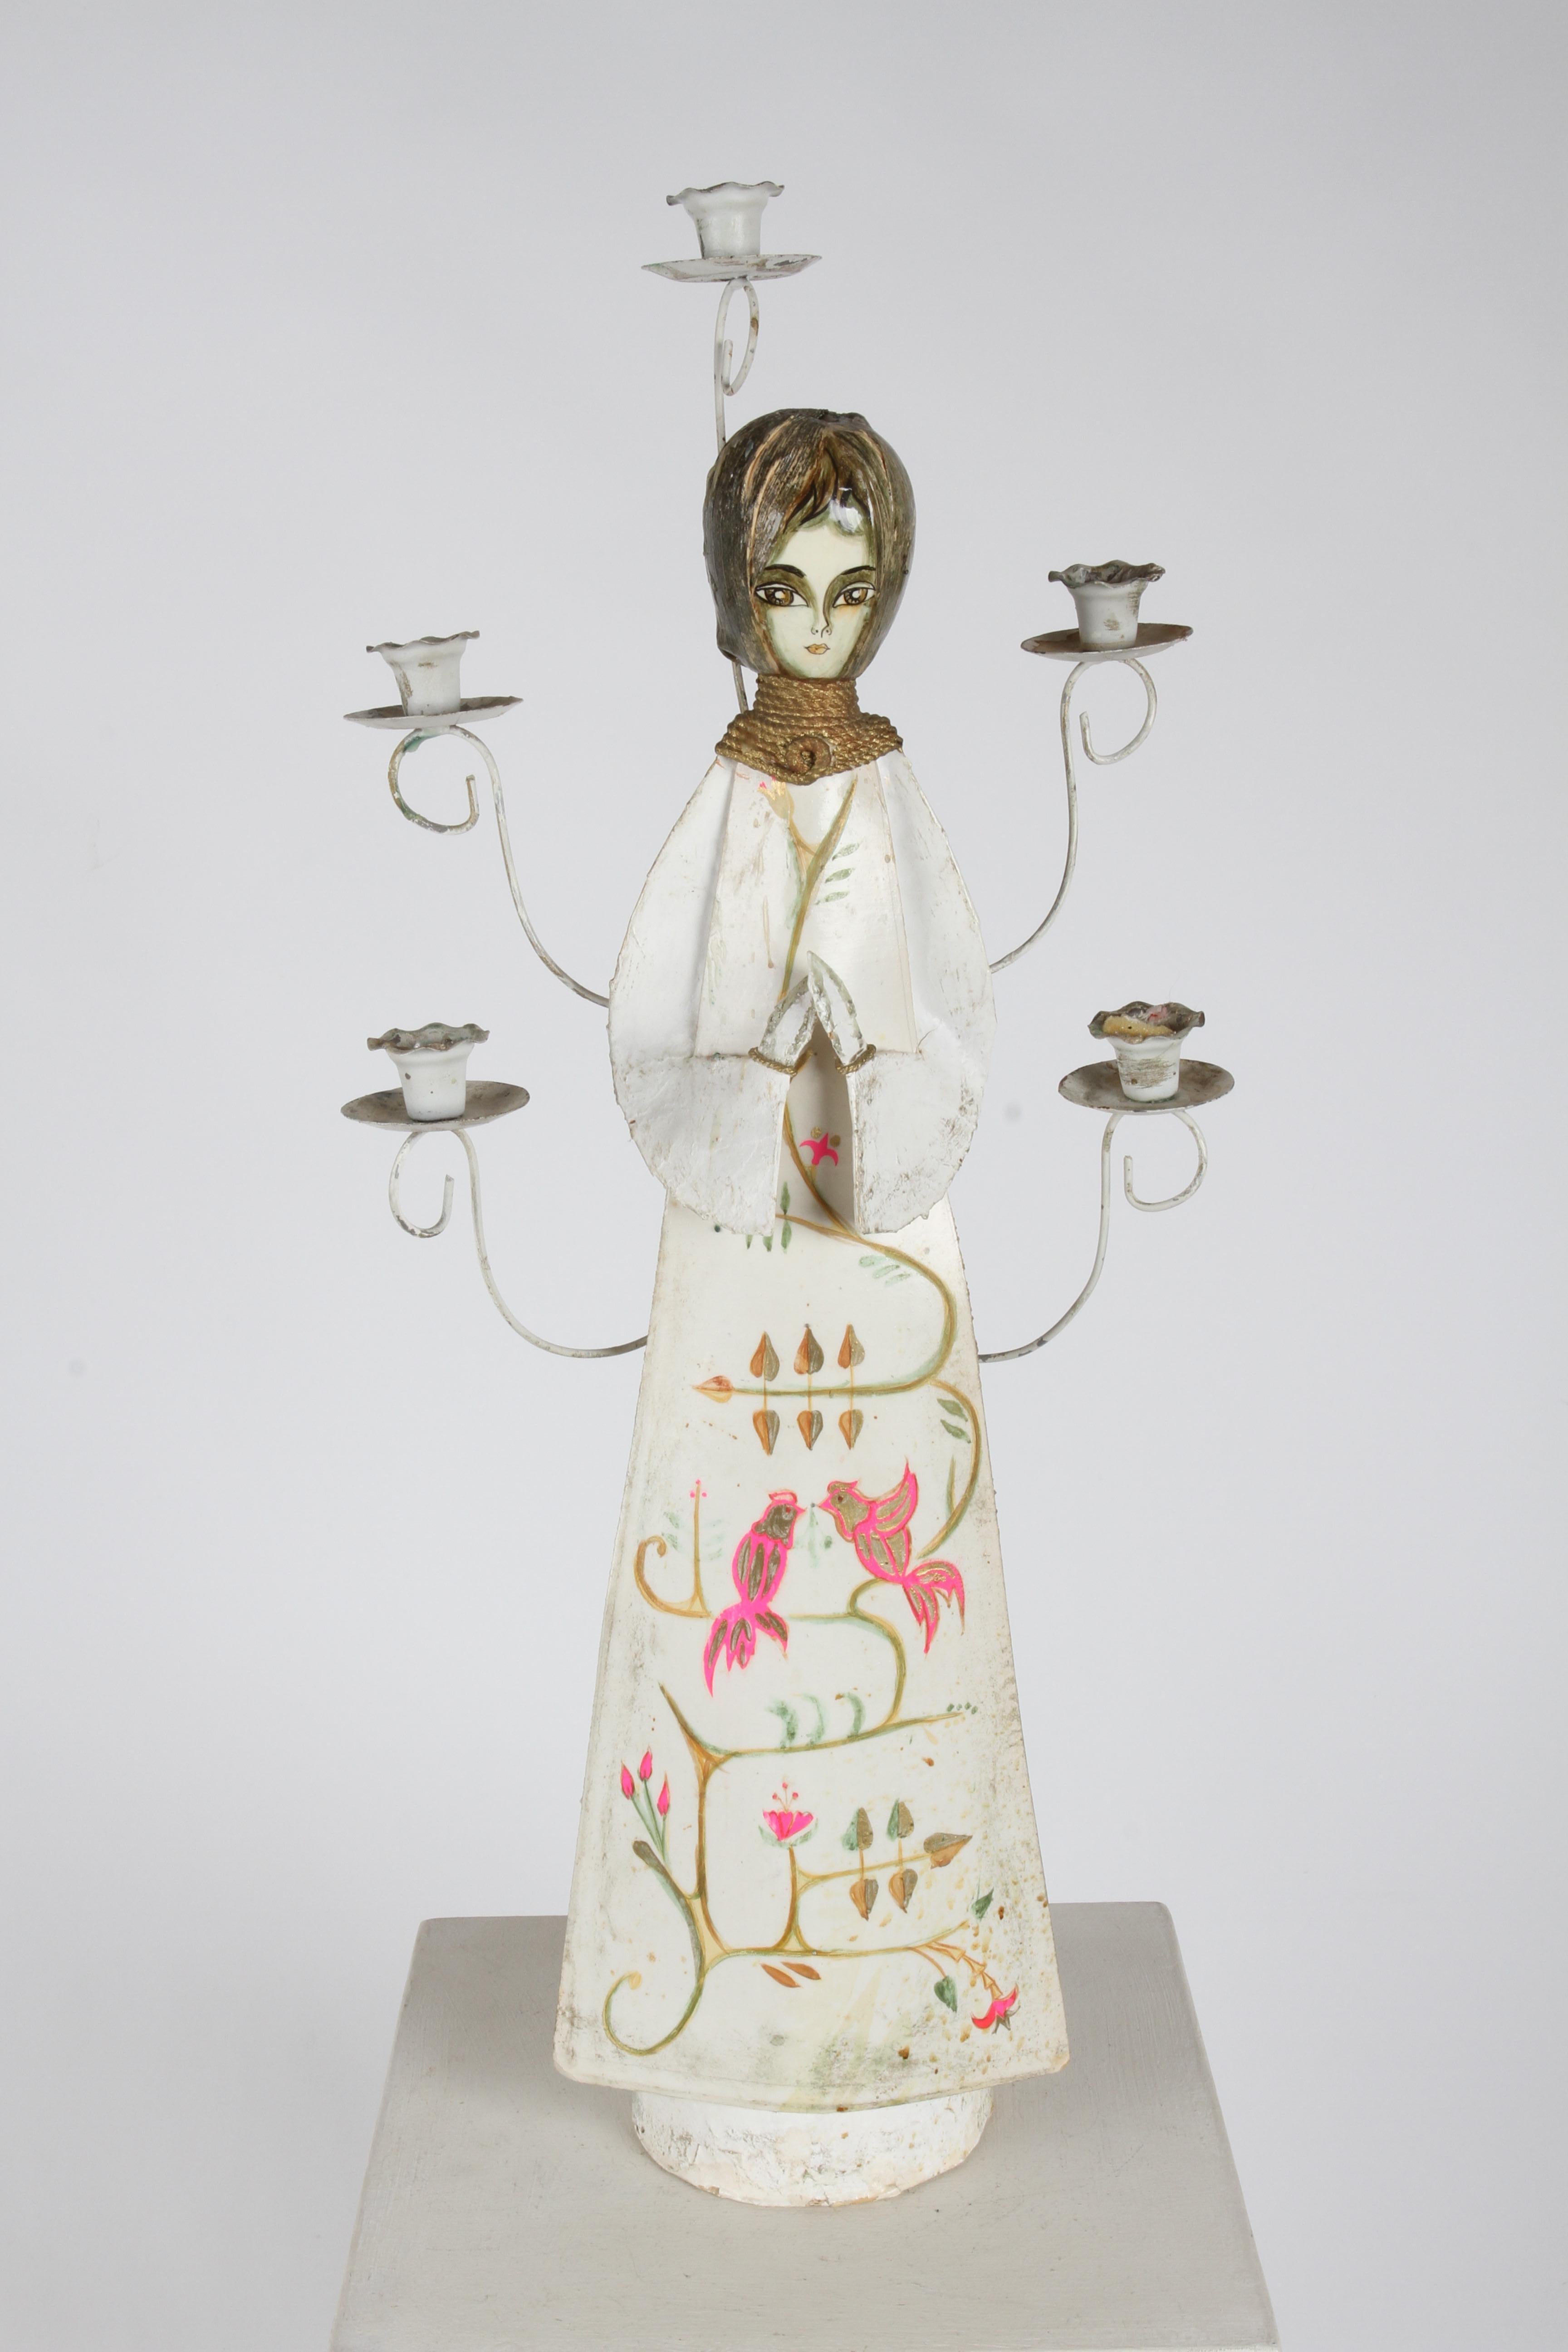 Impressionnant grand ange mexicain des années 1960, peint à la main en papier mâché, avec candélabre à 5 bras. Les détails peints à la main sur la robe blanche comprennent les cheveux, le visage, le collier en corde dorée, les oiseaux roses et dorés